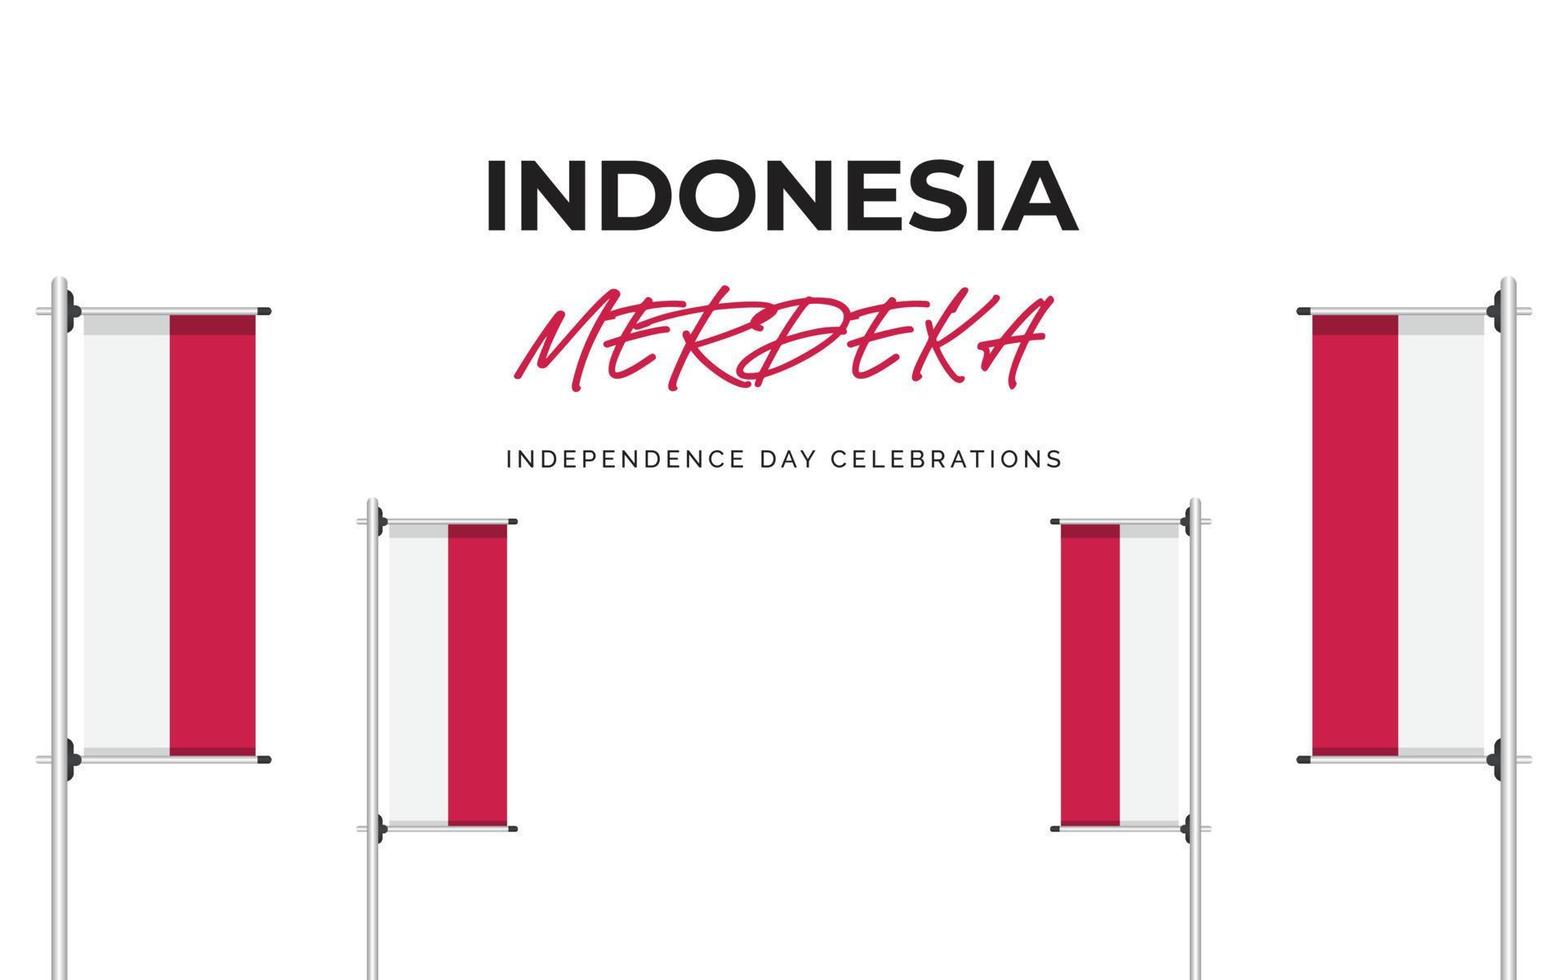 indonesien självständighetsdagen banner designmall vektor